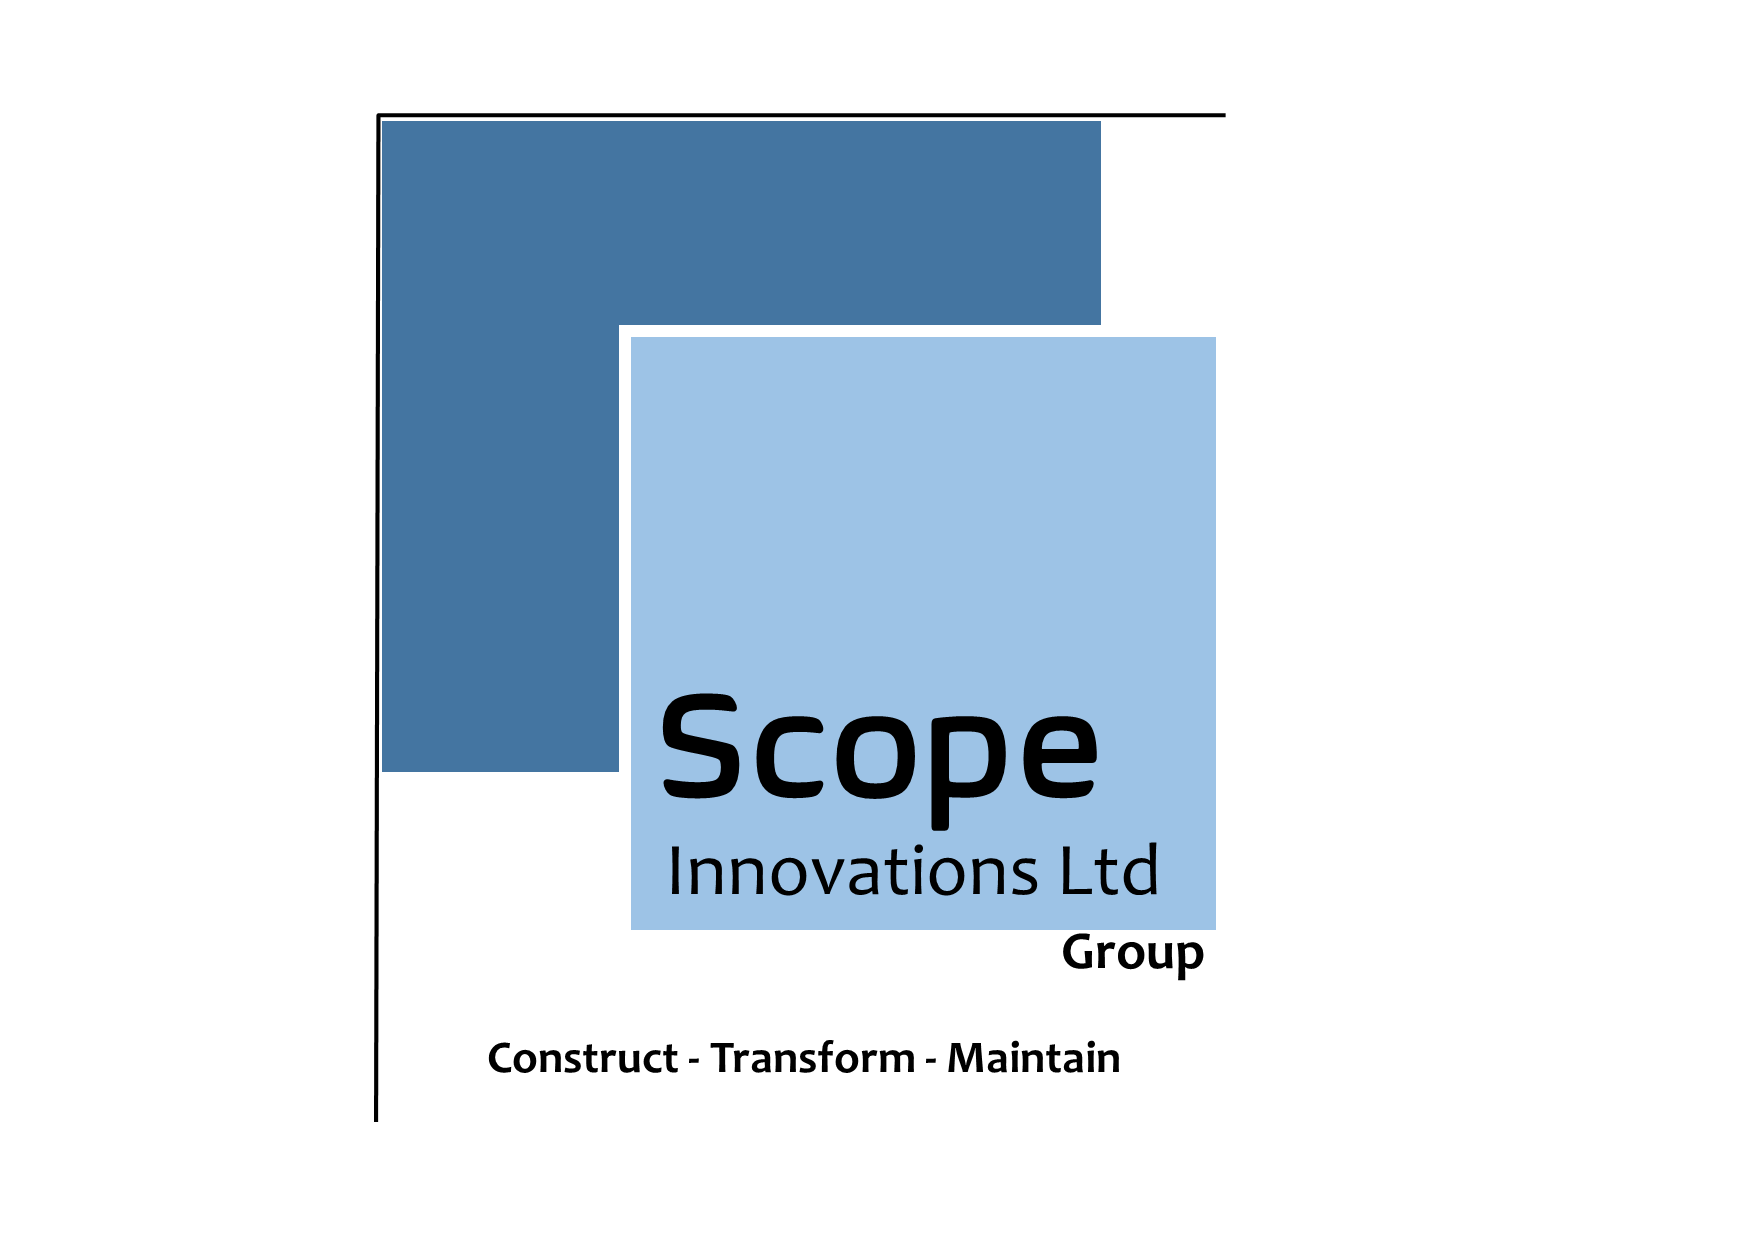 logo for Scope Innovations Ltd